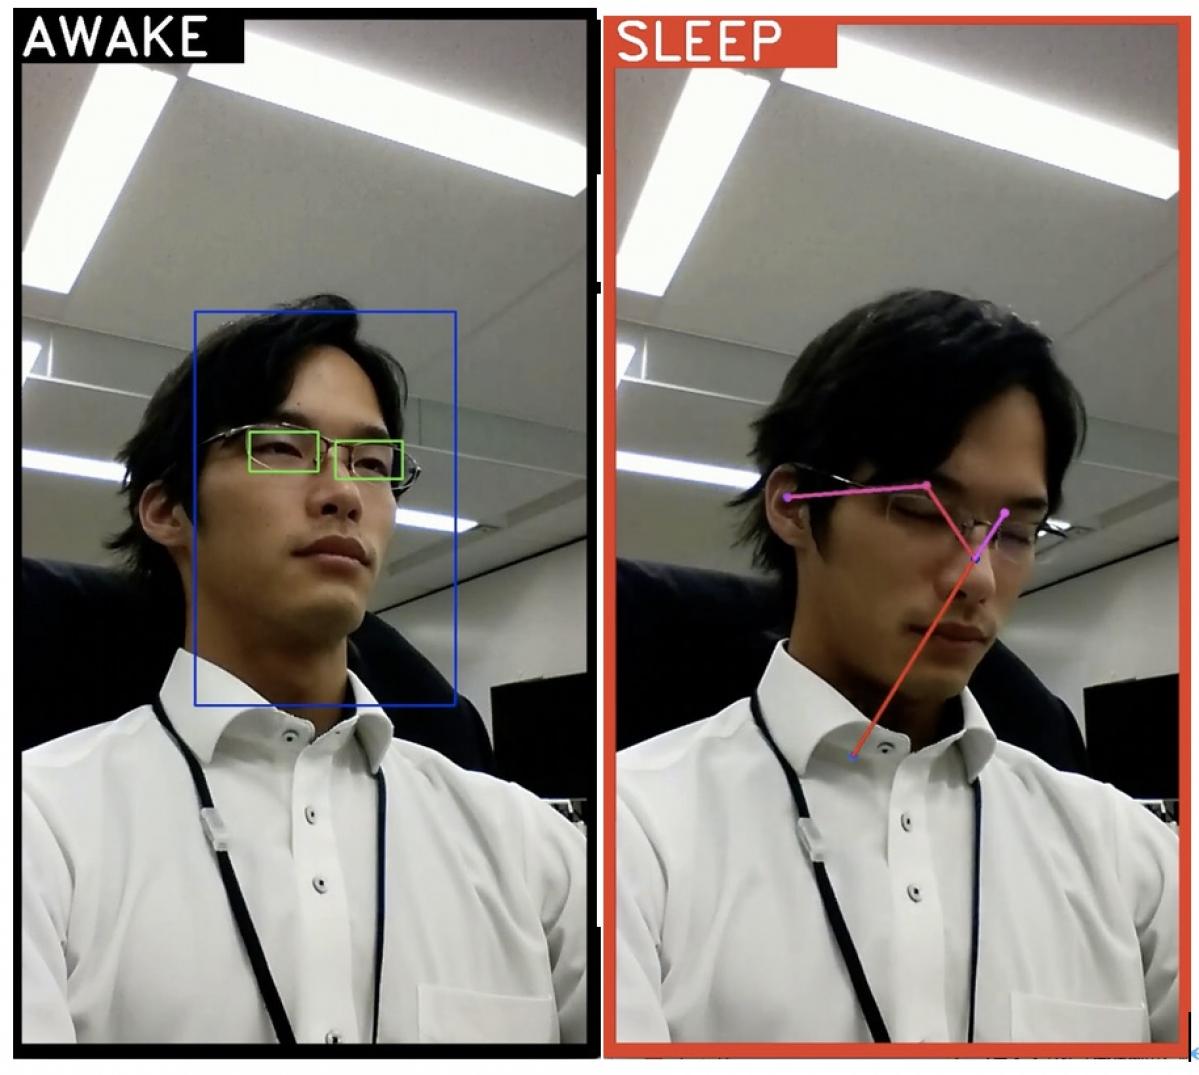 Automagi：映像から運転中の居眠りを検知するNTTドコモのAIシステムの開発を支援